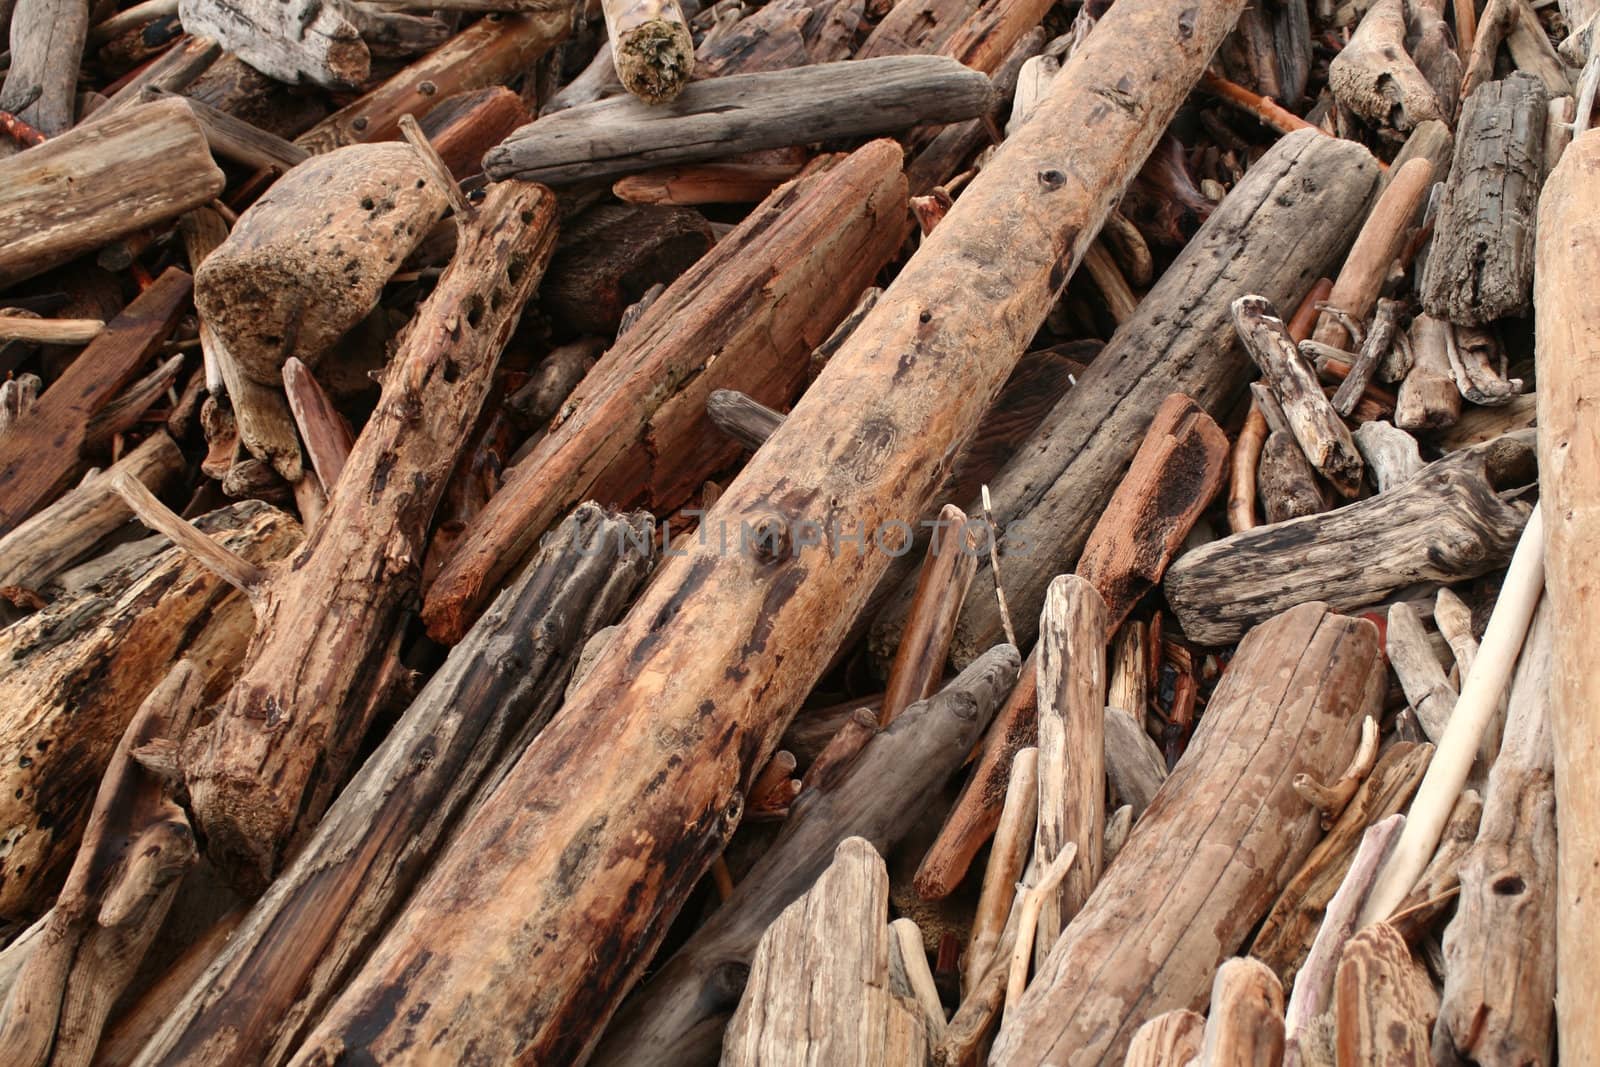 A pile of drift wood on the beach.